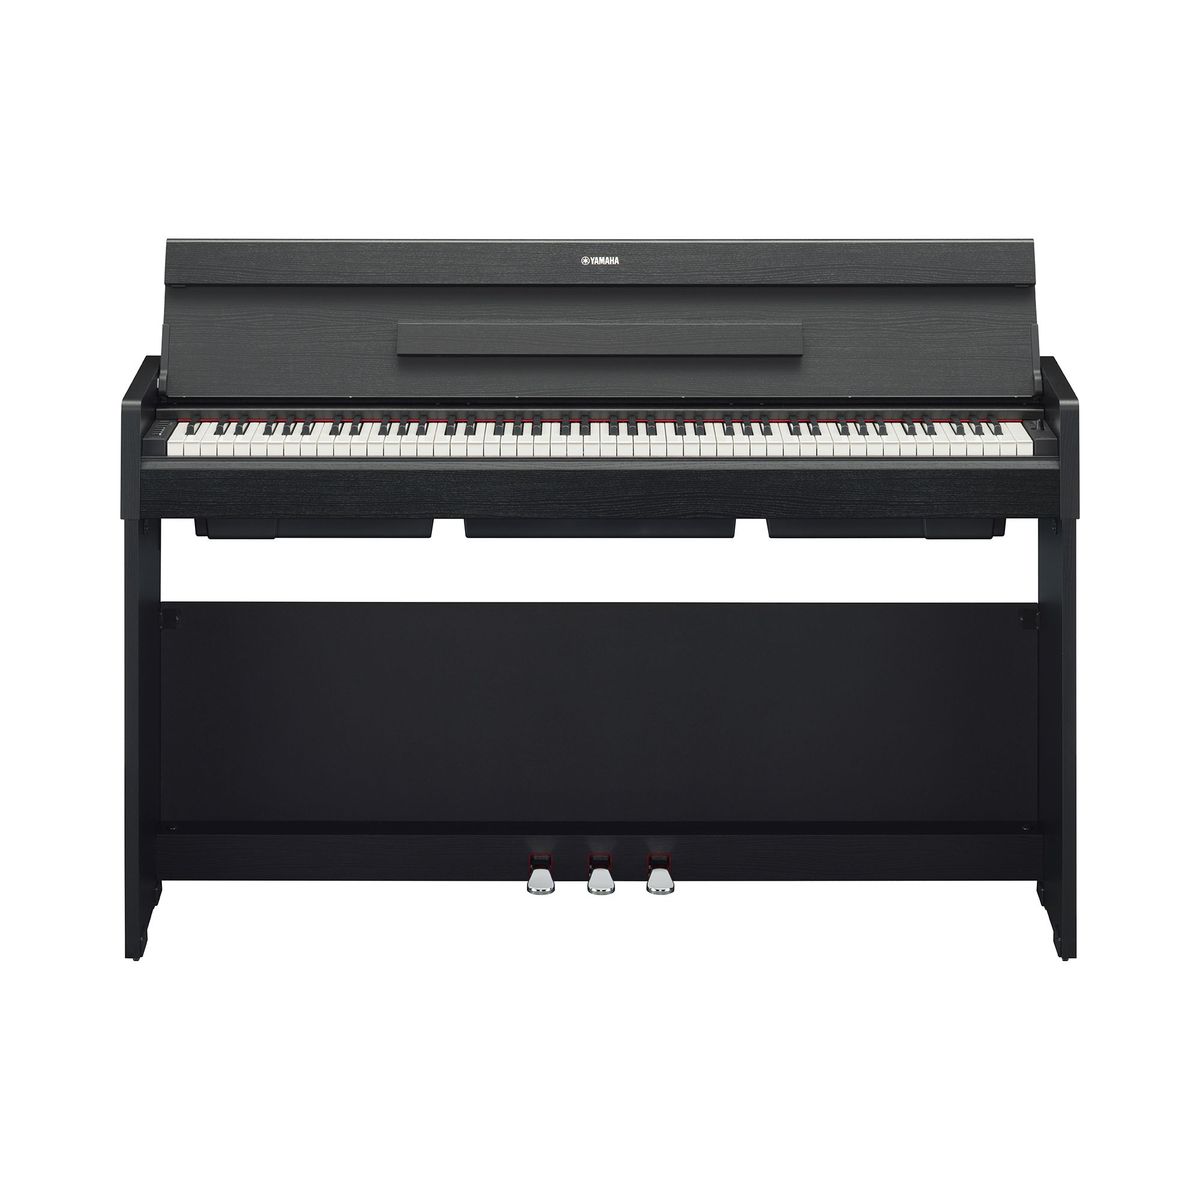 Цифровые пианино Yamaha YDP-S35B Arius bigfun 37 клавиш usb электронный орган детское электрическое пианино с микрофоном черная цифровая музыкальная электронная клавиатура